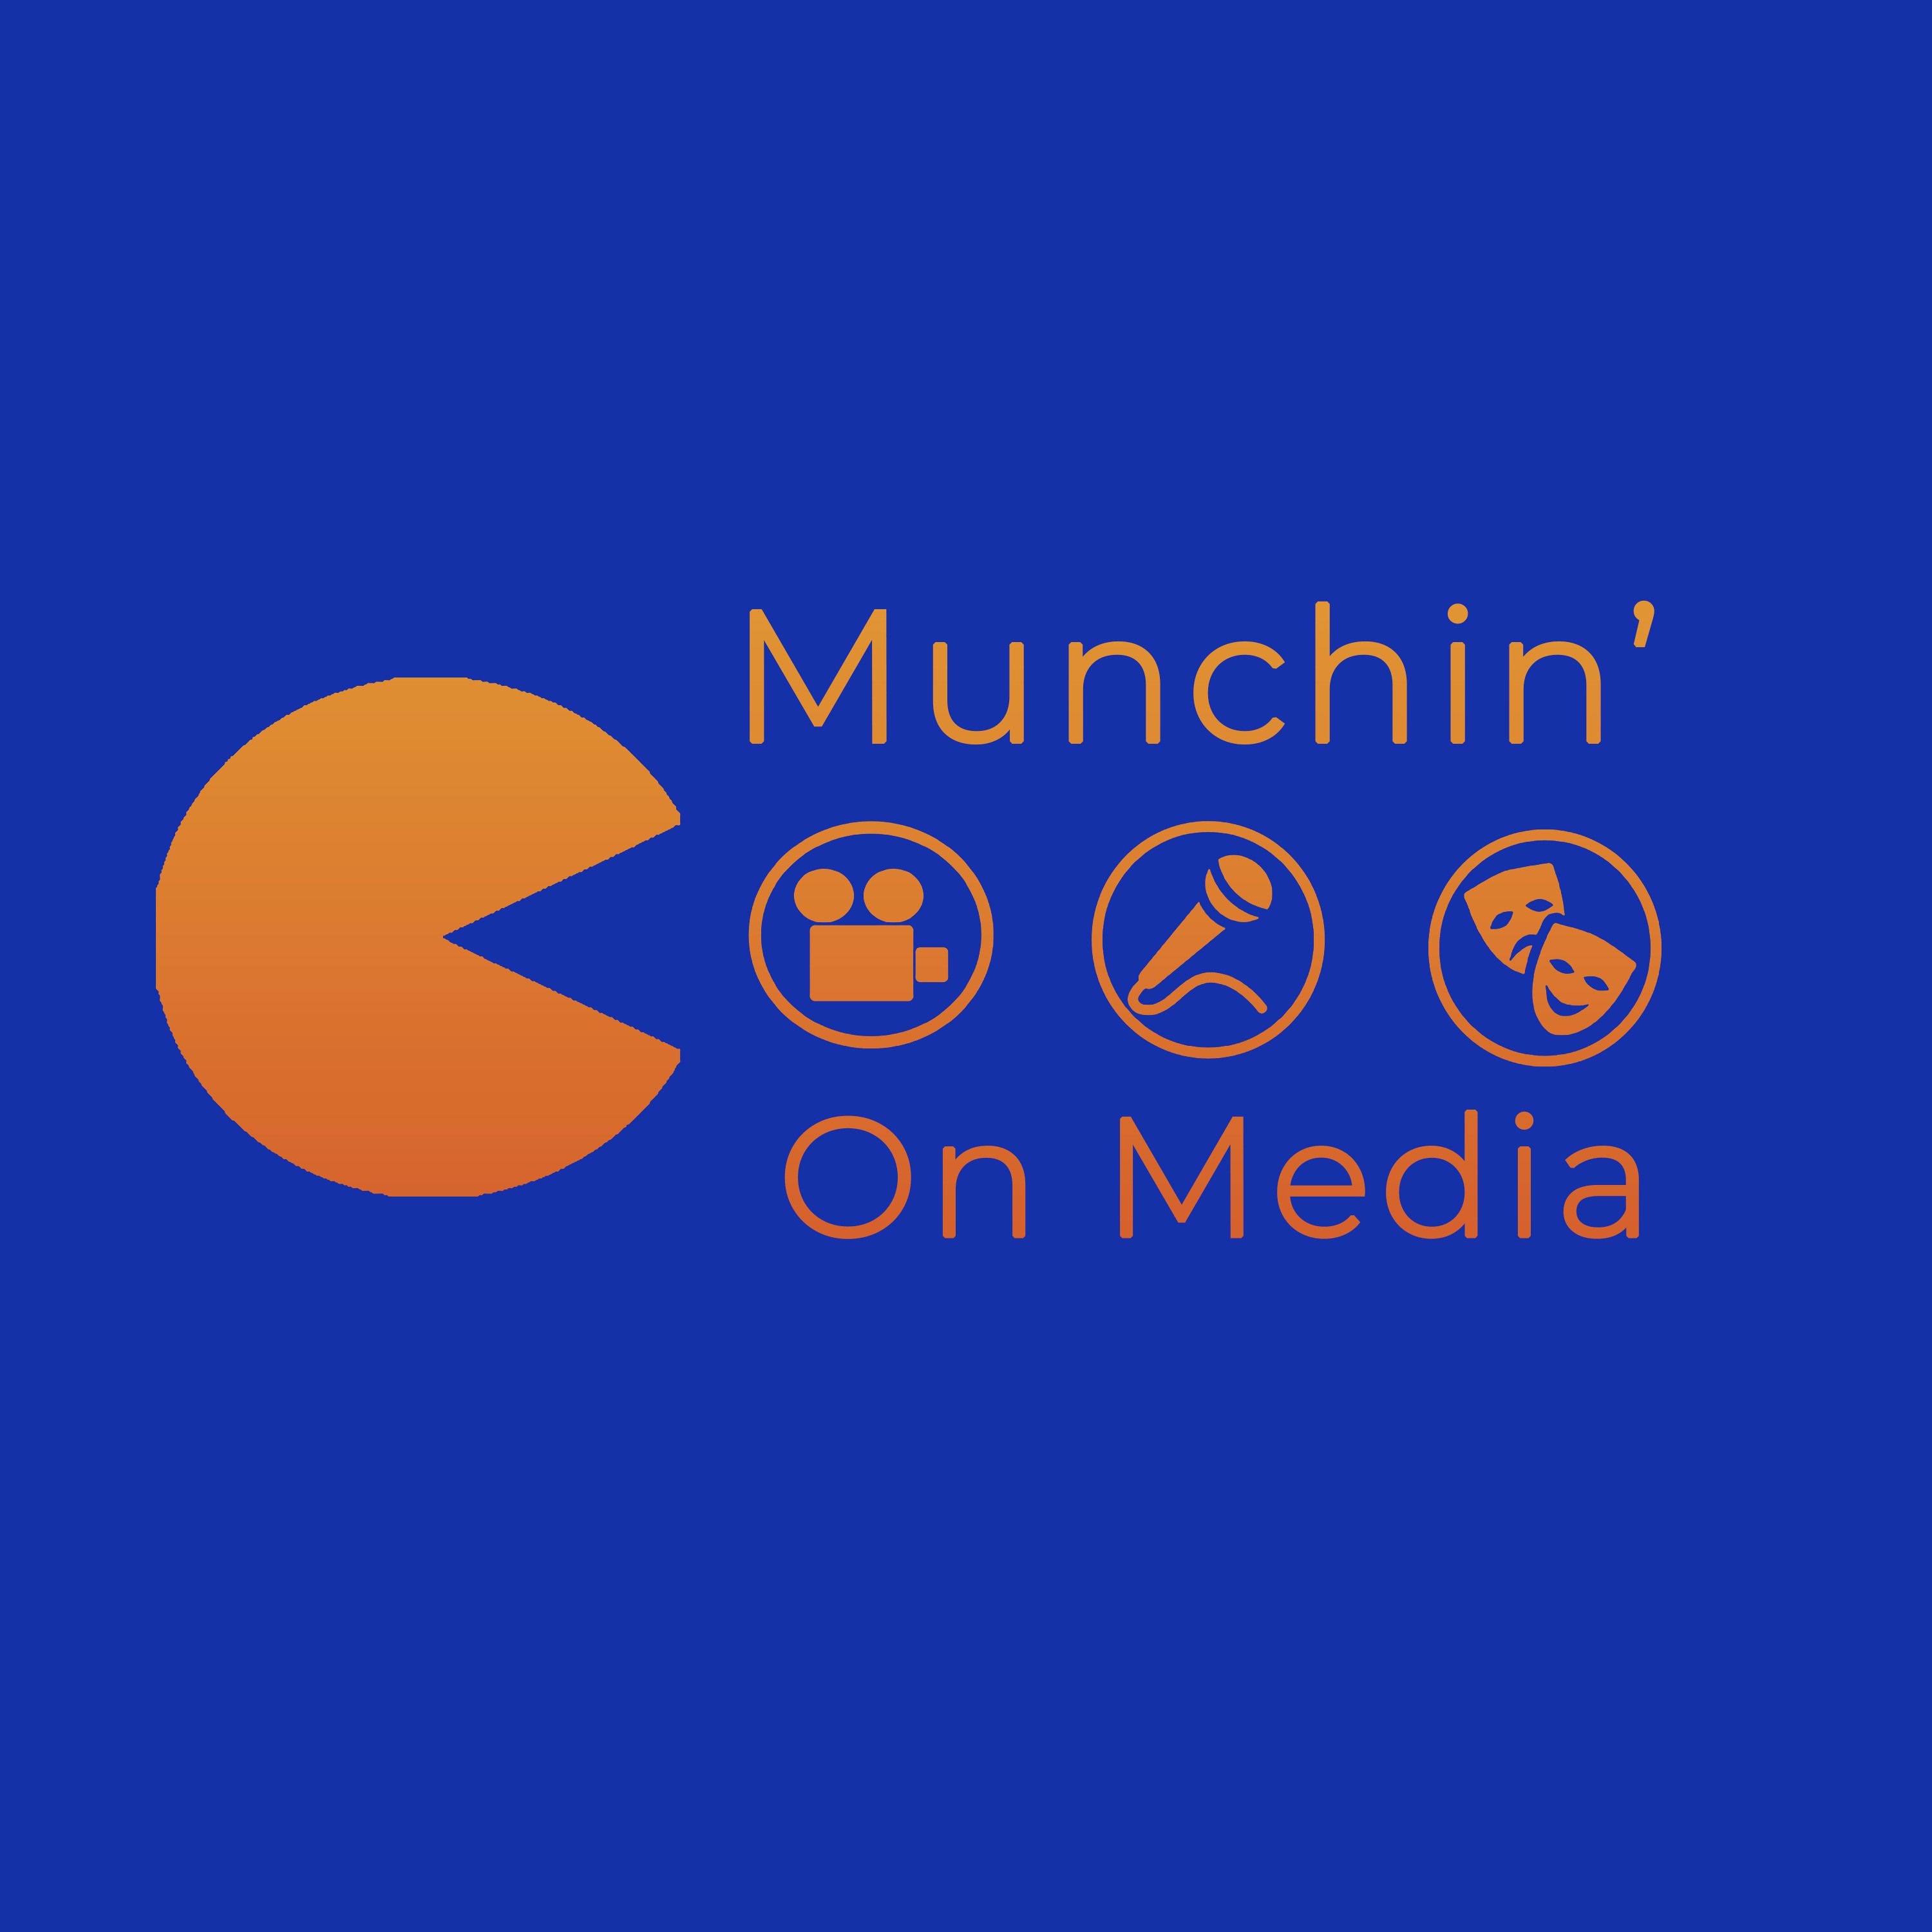 Muchin' On Media - Episode 4